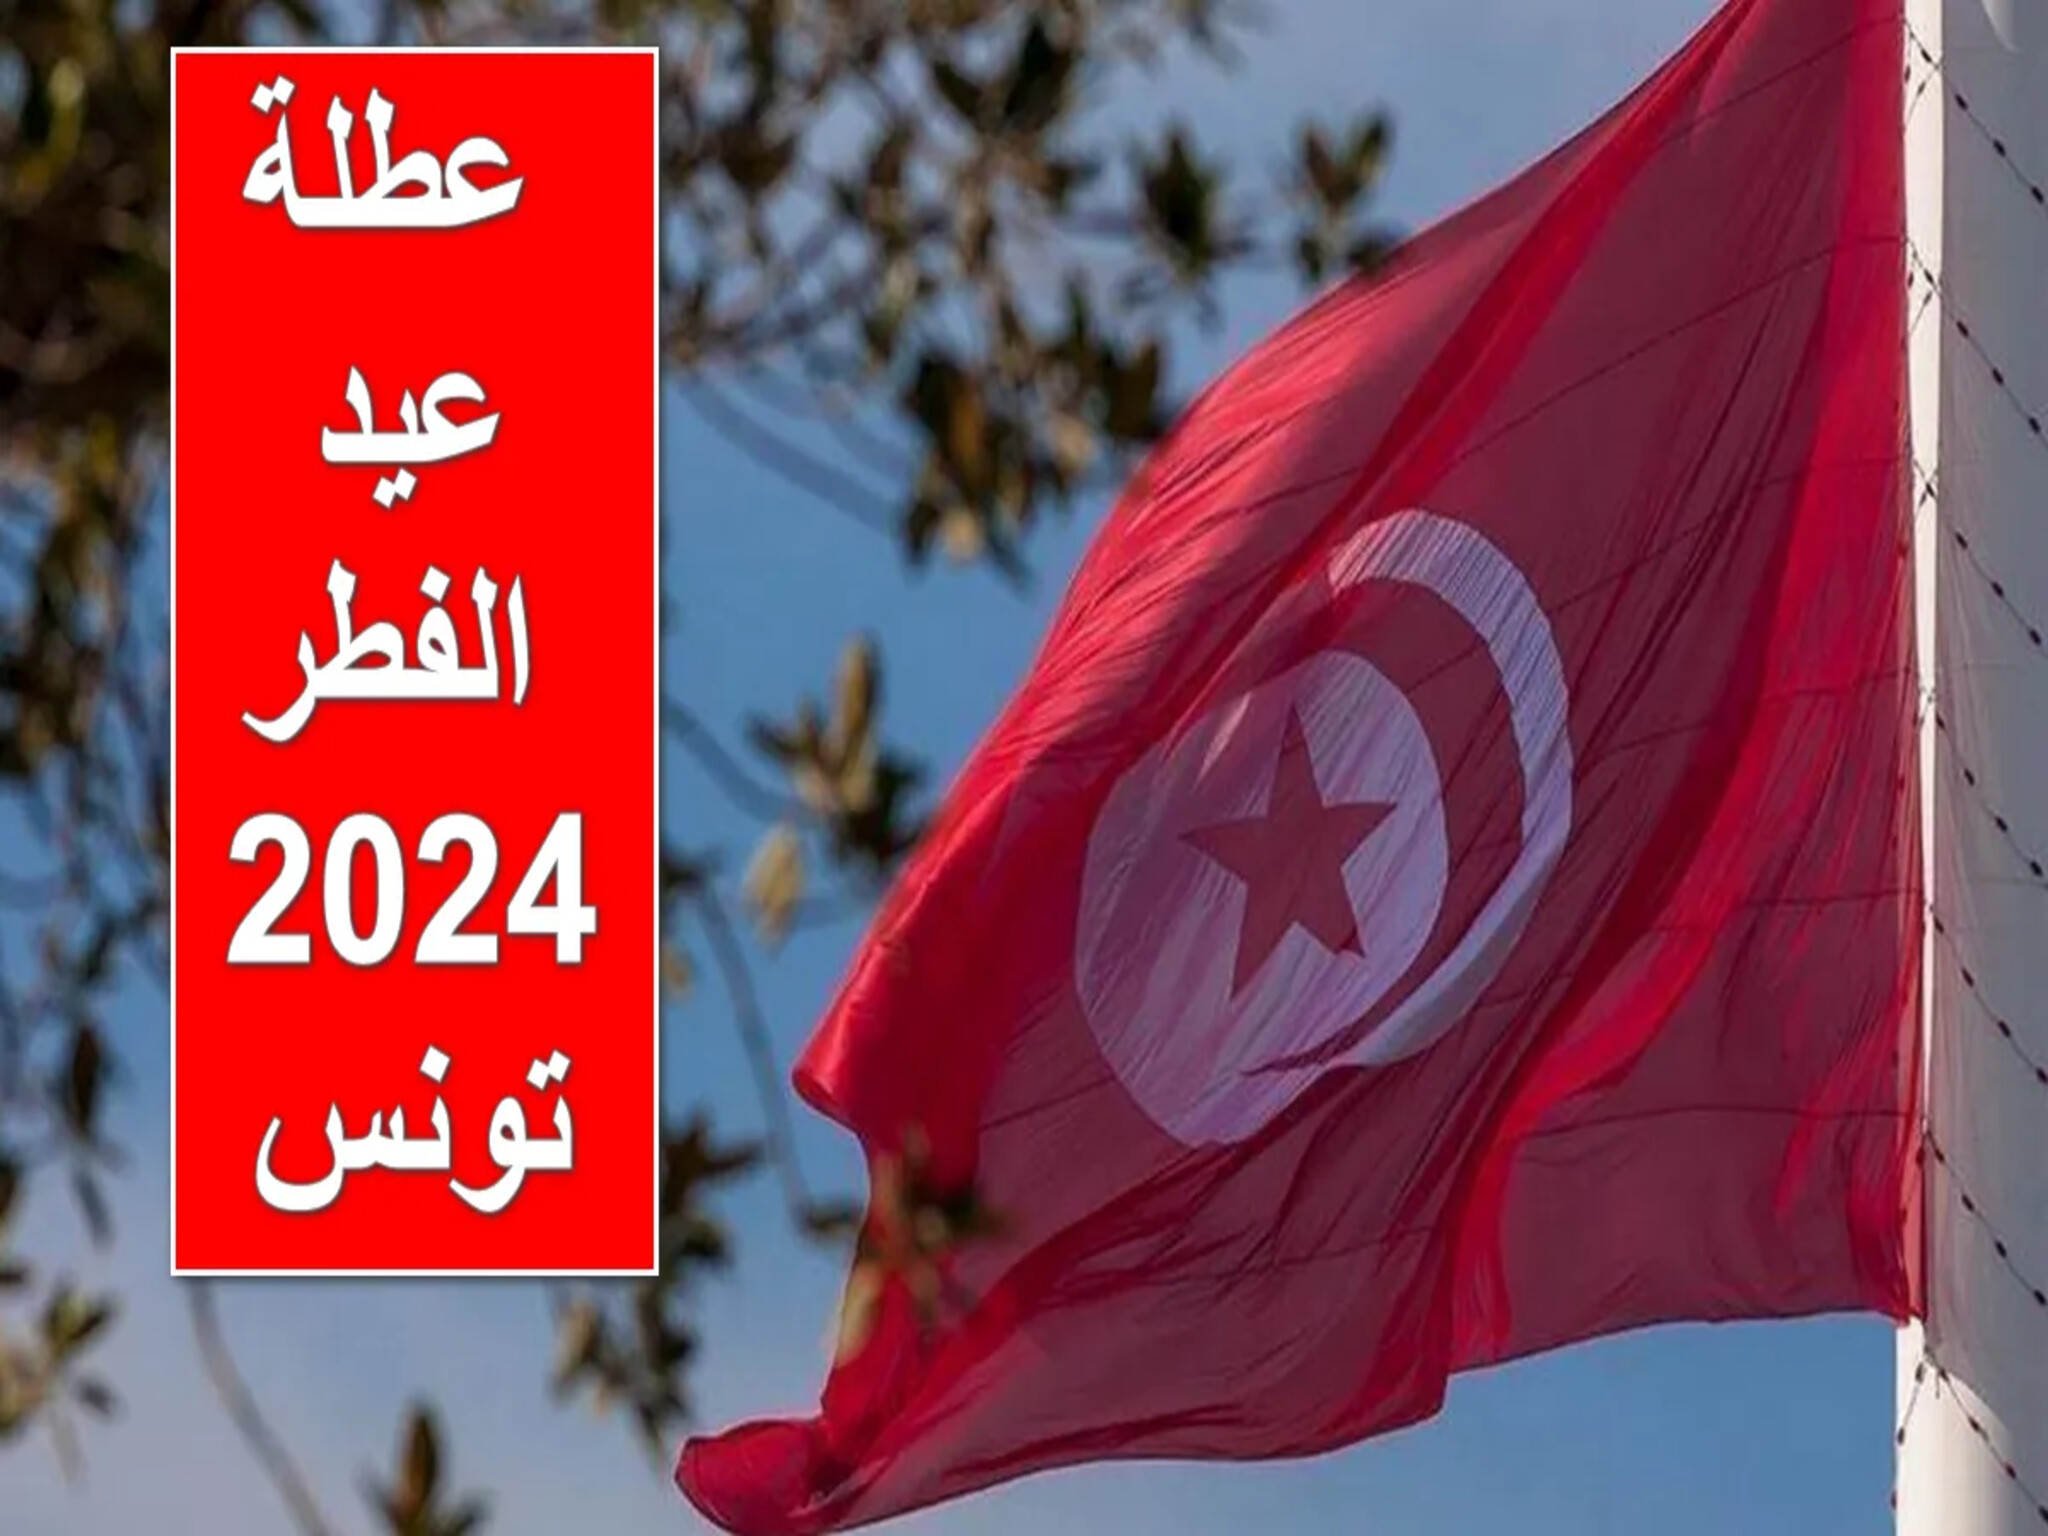 رسميًا | الحكومة التونسية تُعلن موعد عطلة عيد الفطر 2024 للقطاع العام والخاص 